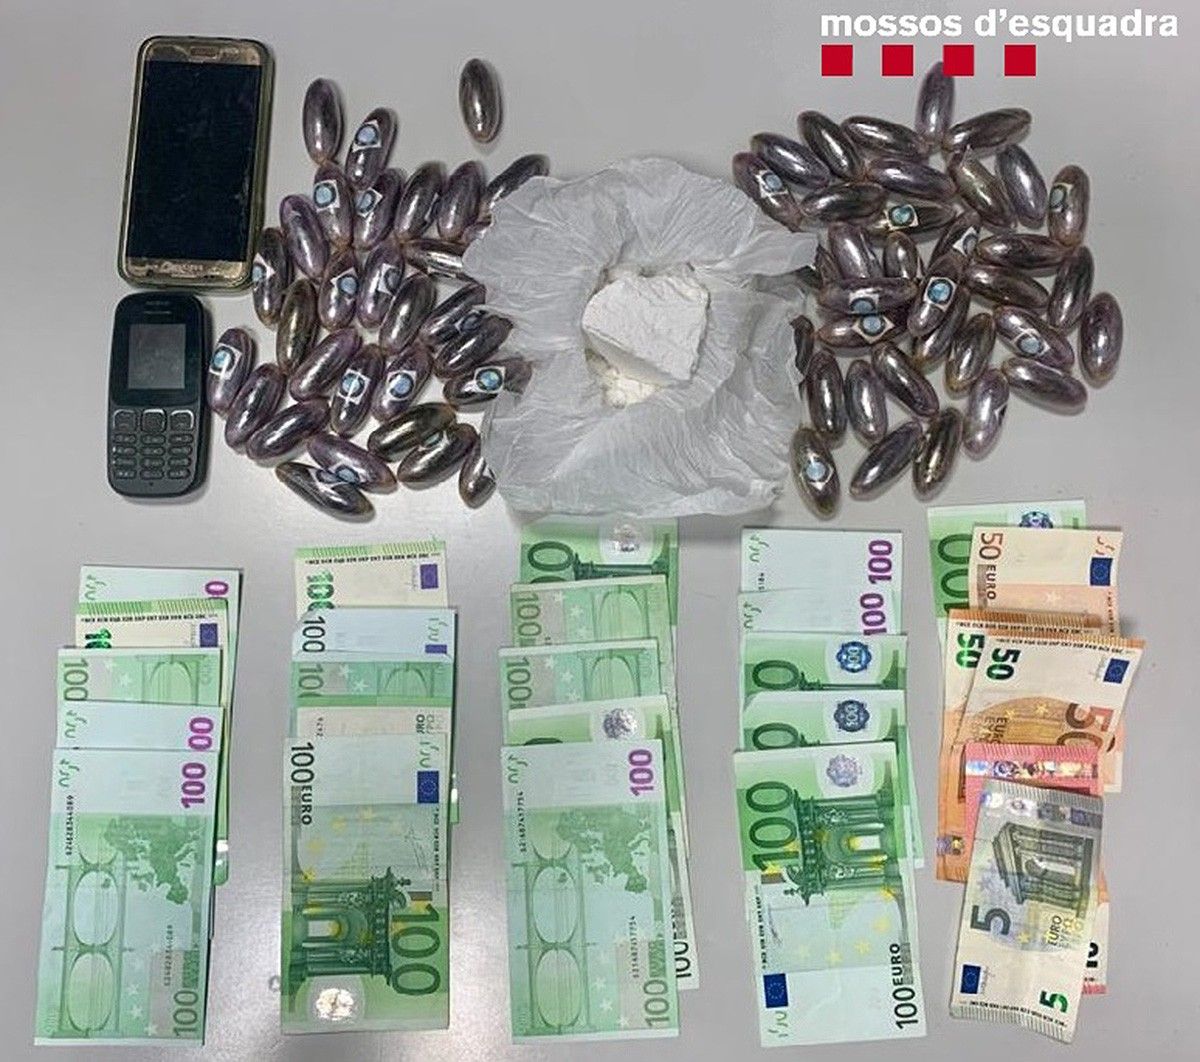 La droga i els diners interceptats